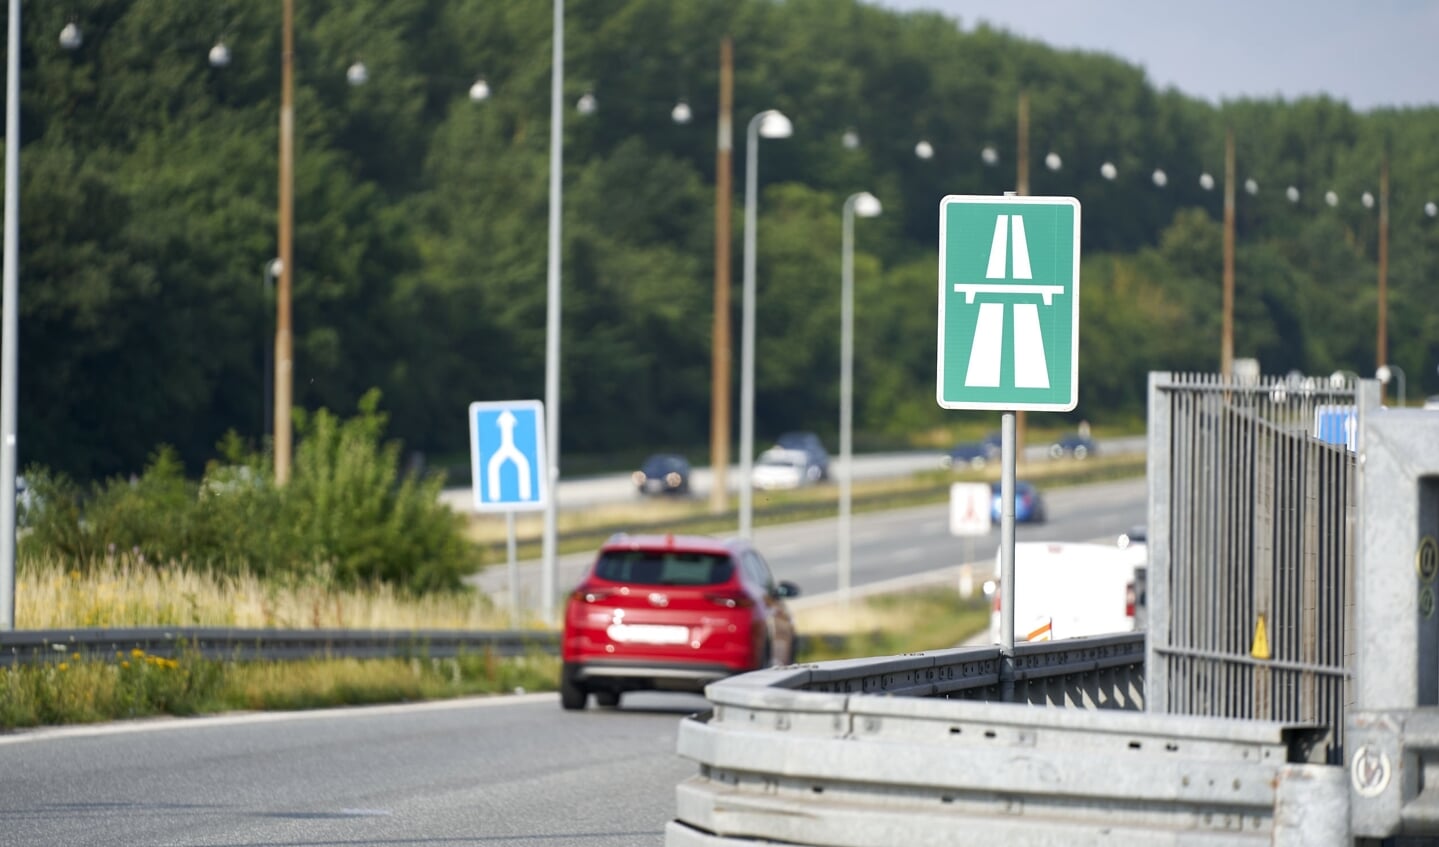 Flere overholder fartgrænserne på motorvejene i Danmark, viser beregninger fra Vejdirektoratet, der blandt andet påpeger opmærksomhed på at spare brændstof. (Arkivfoto).